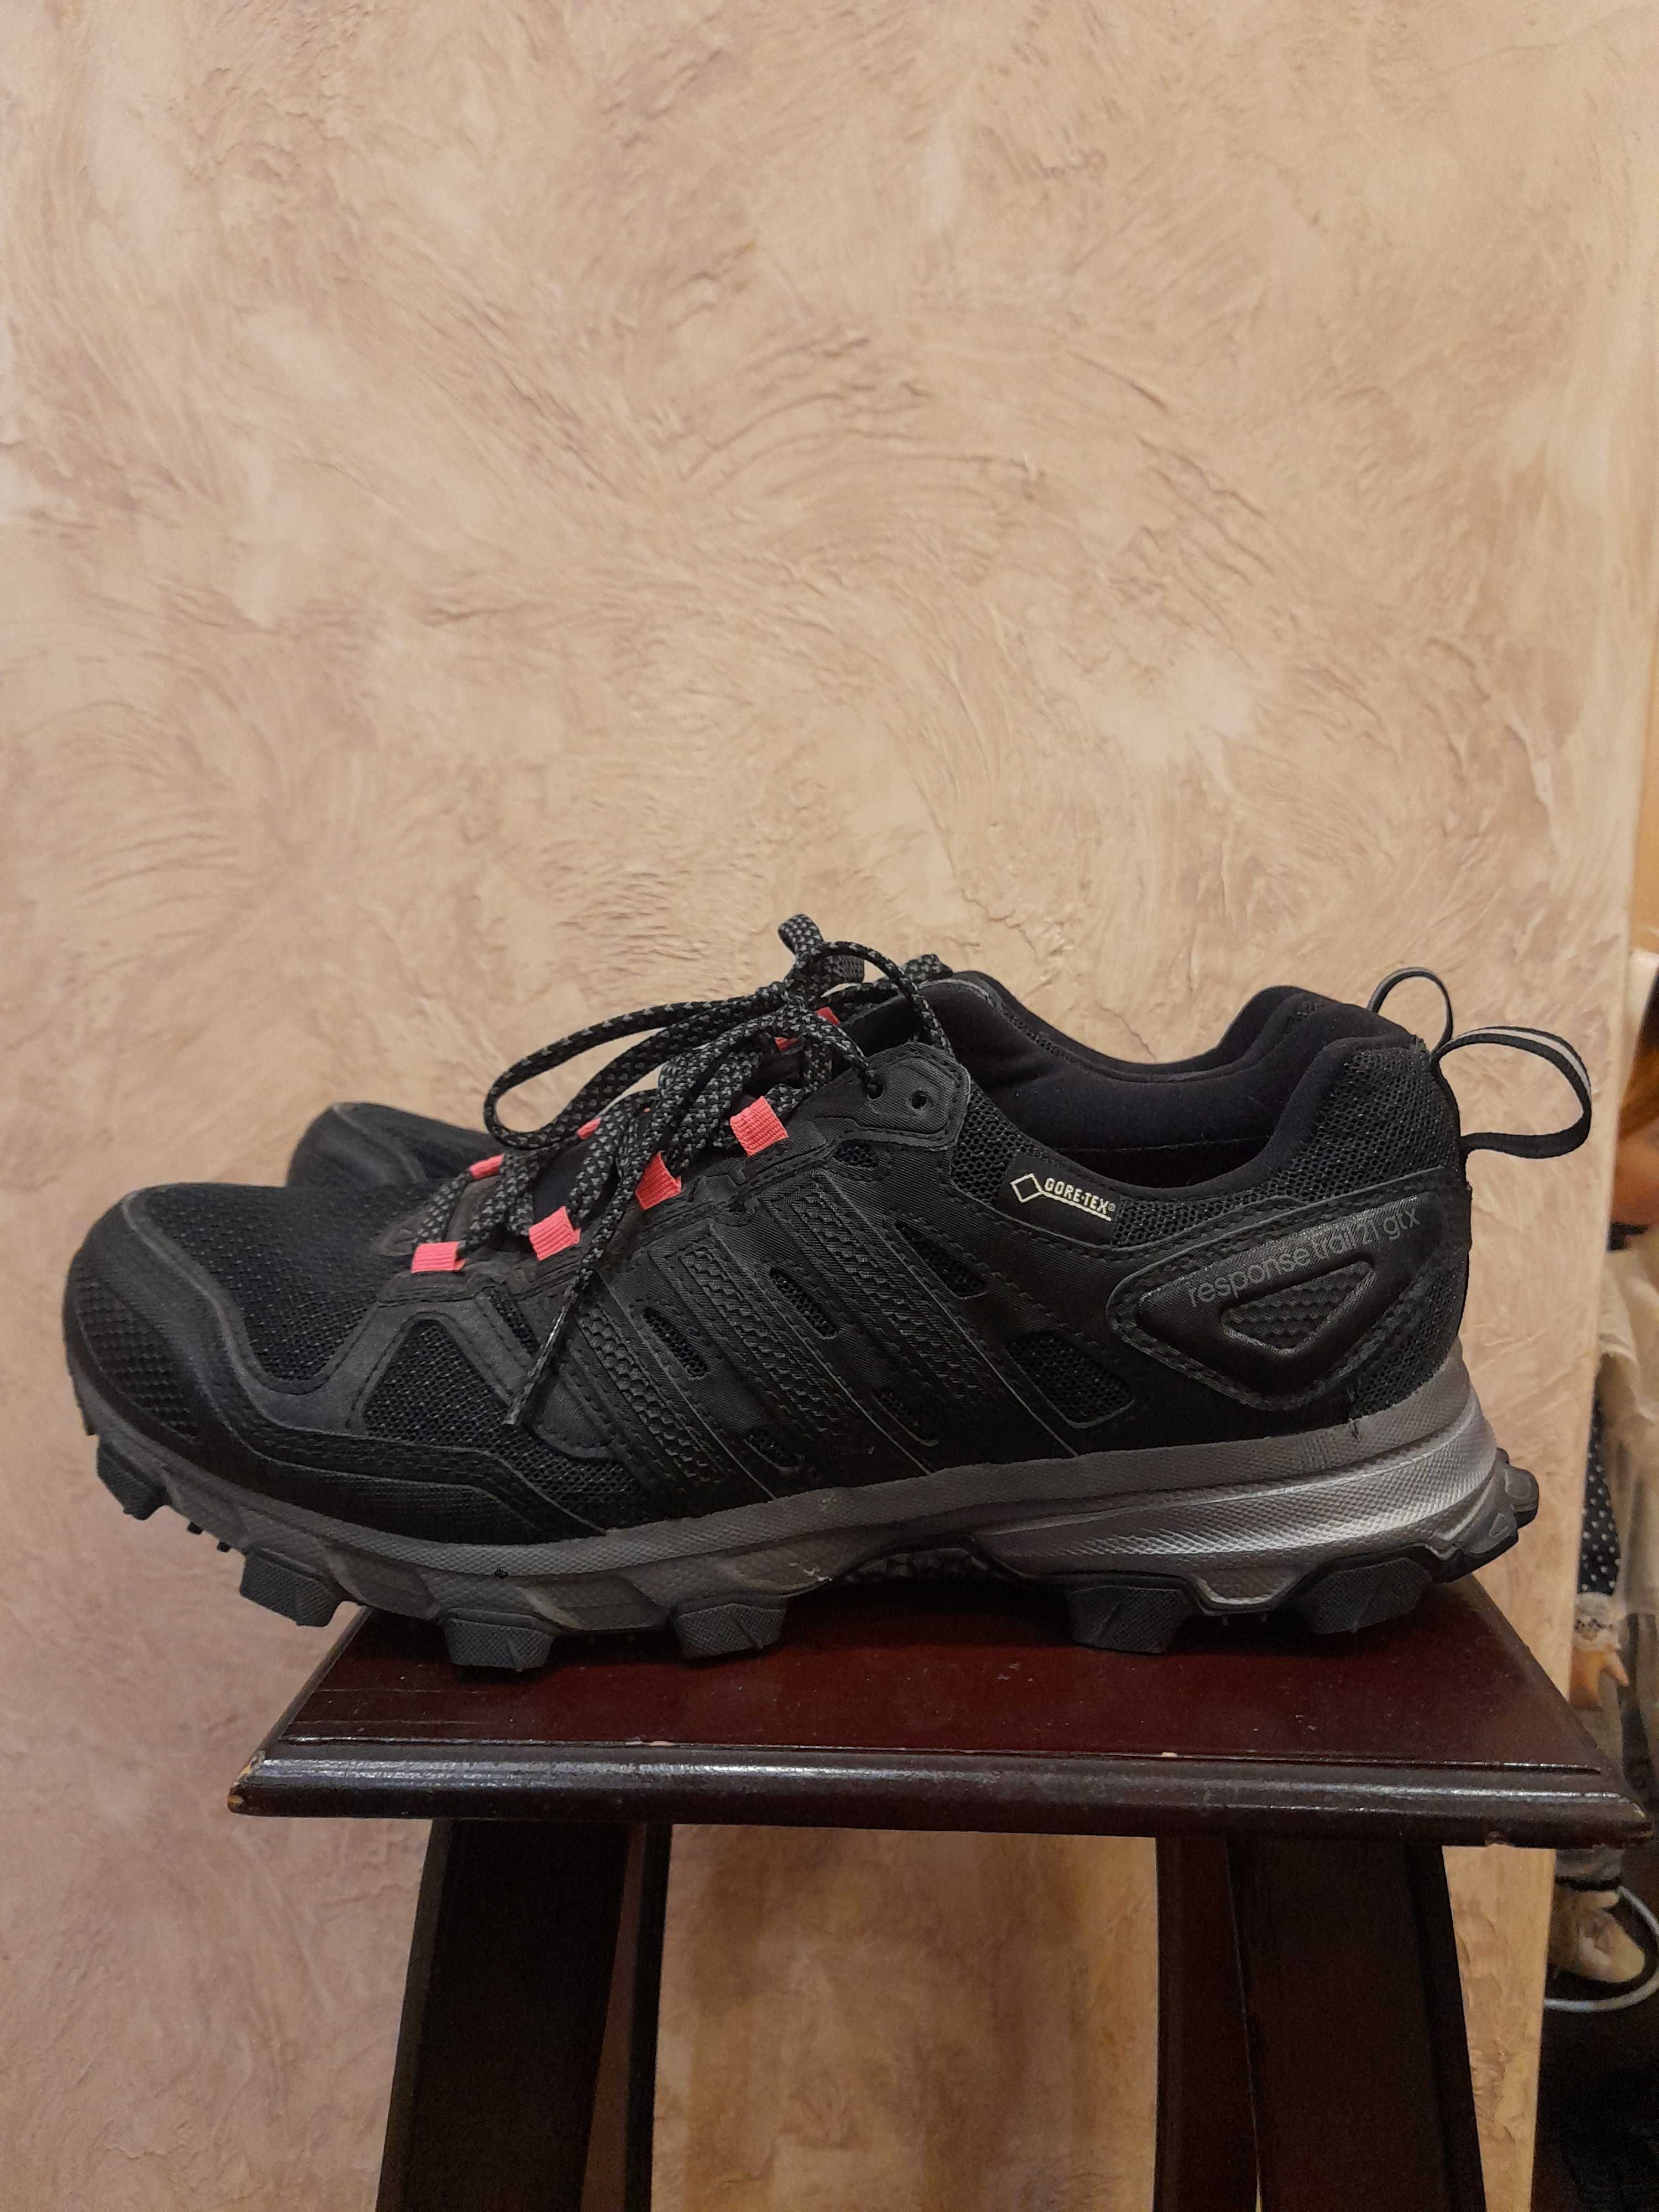 Продам кроссовки для трейл-р Adidas Response Trail W 21 GTX Размер 41: 1  200 грн. - Трекинговые кроссовки Днепр на Olx